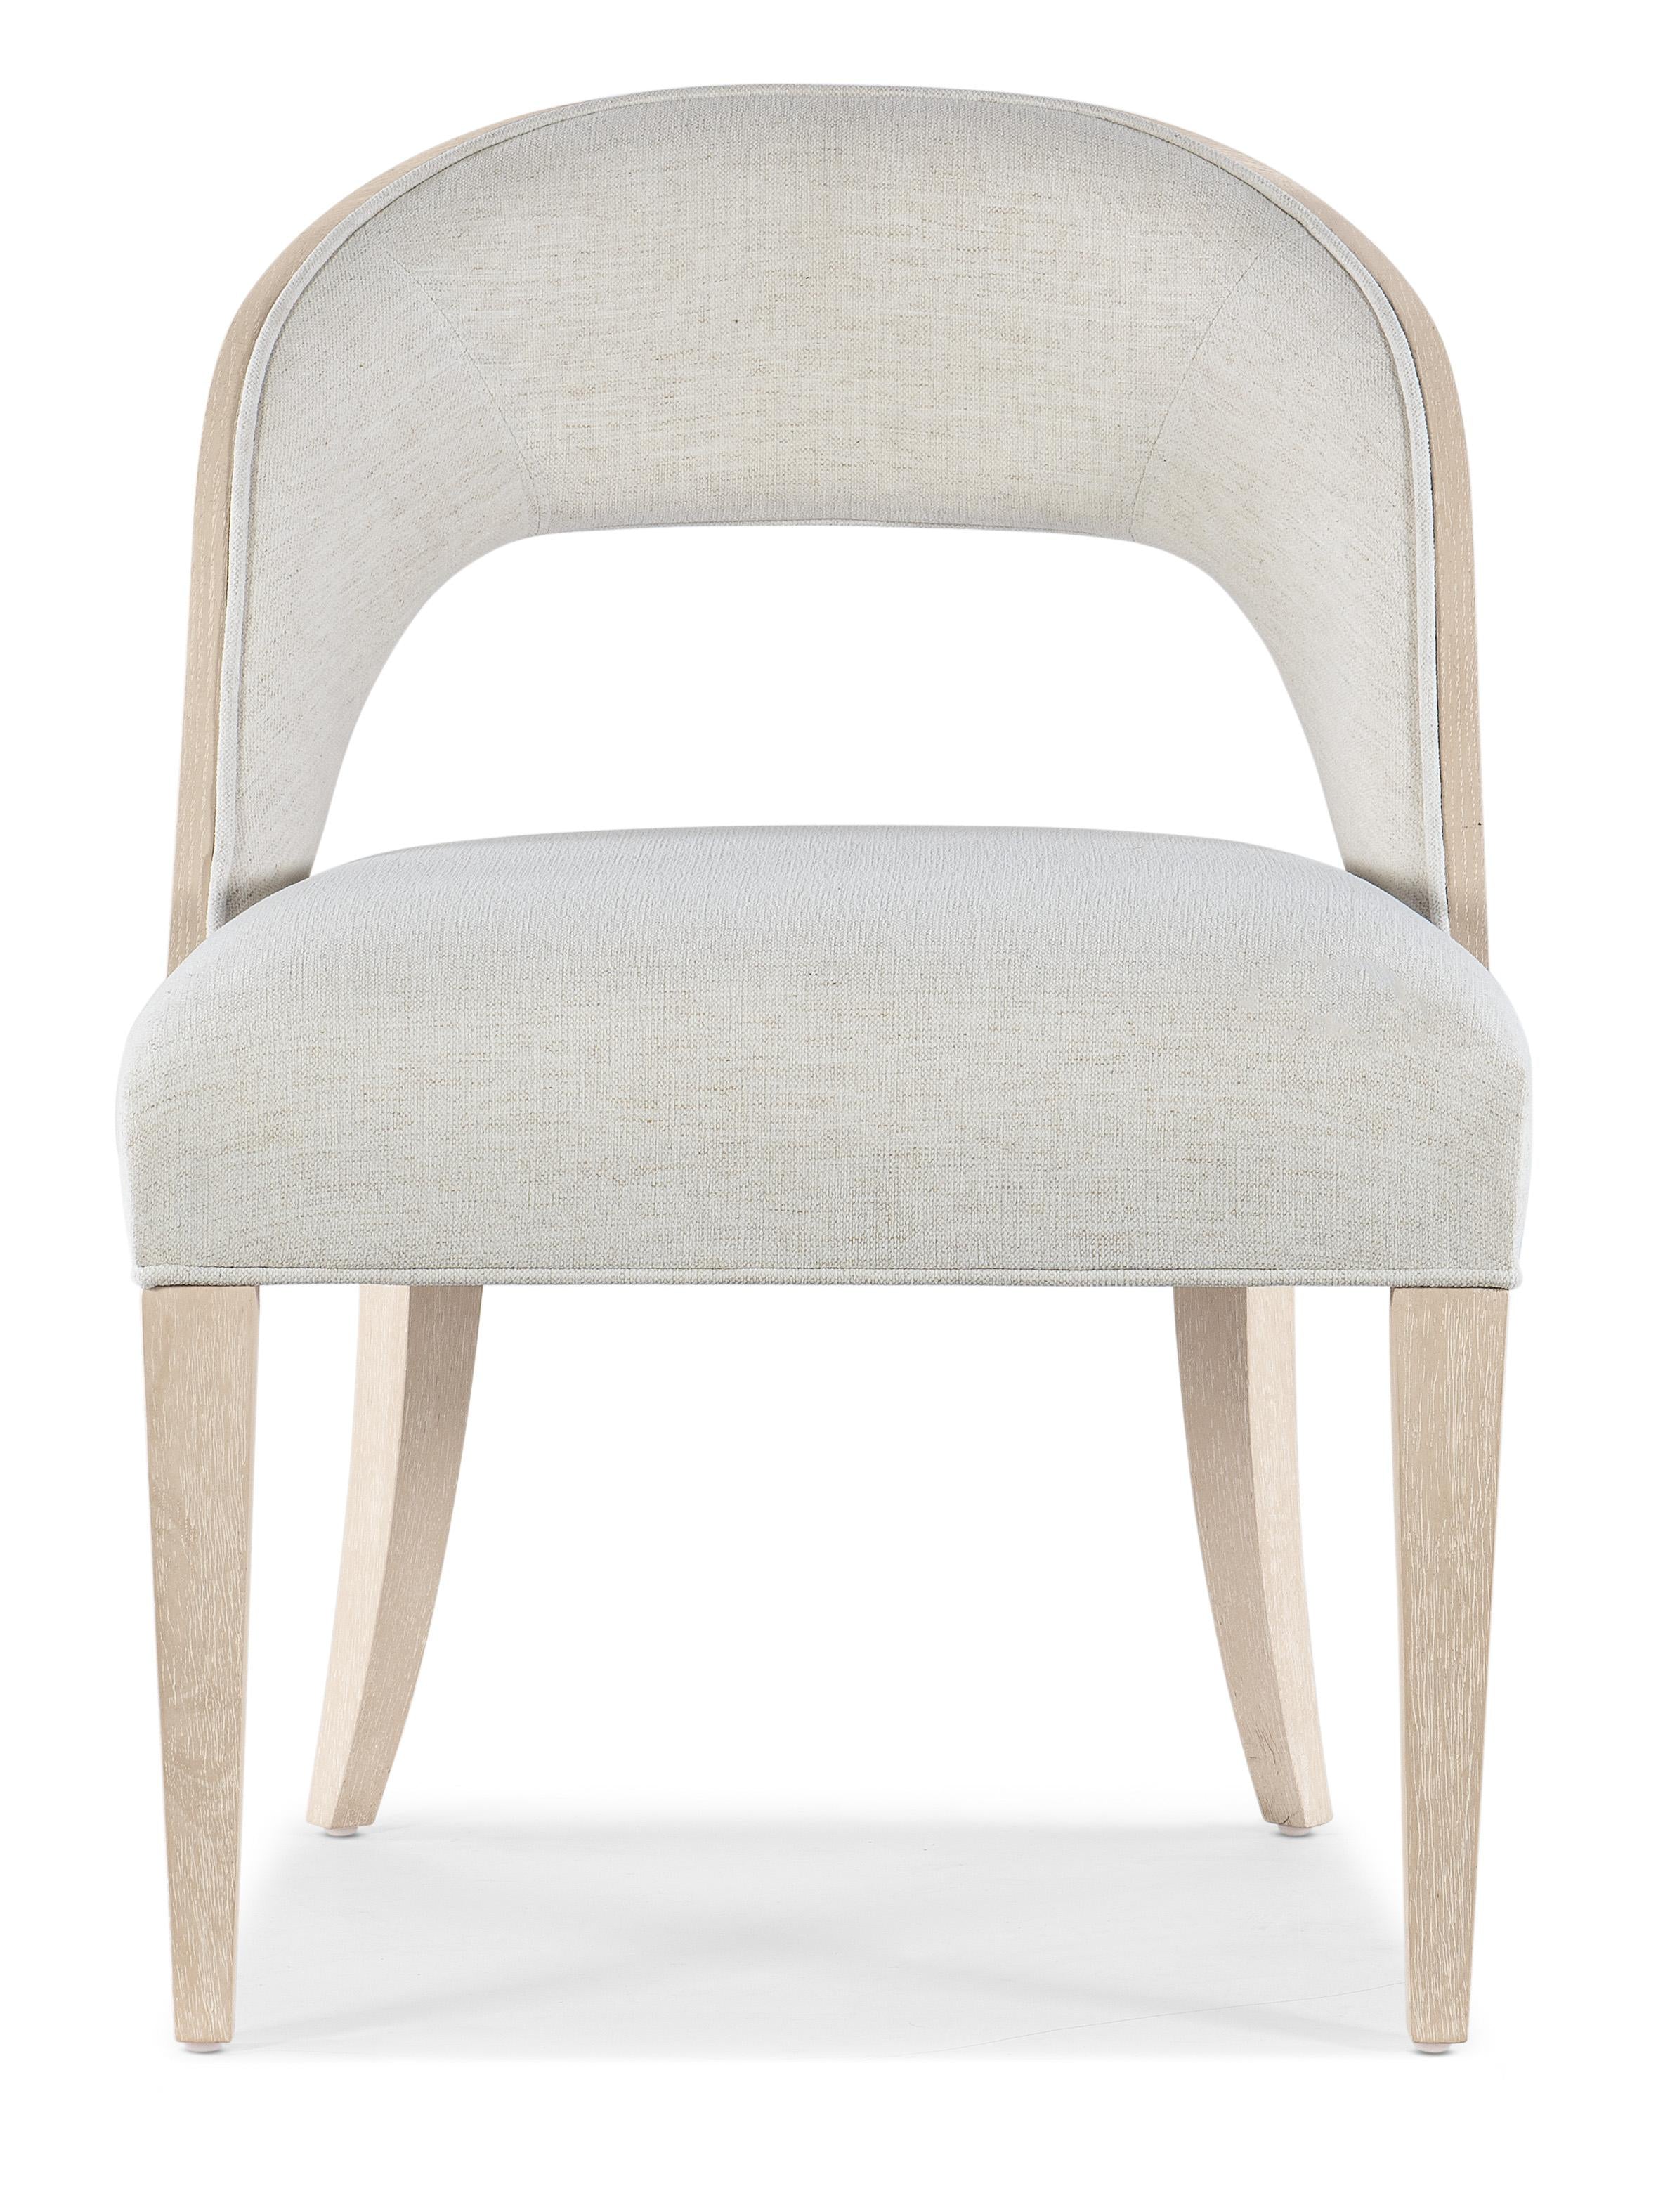 Nouveau Chic Side Chair-2 per ctn/price ea